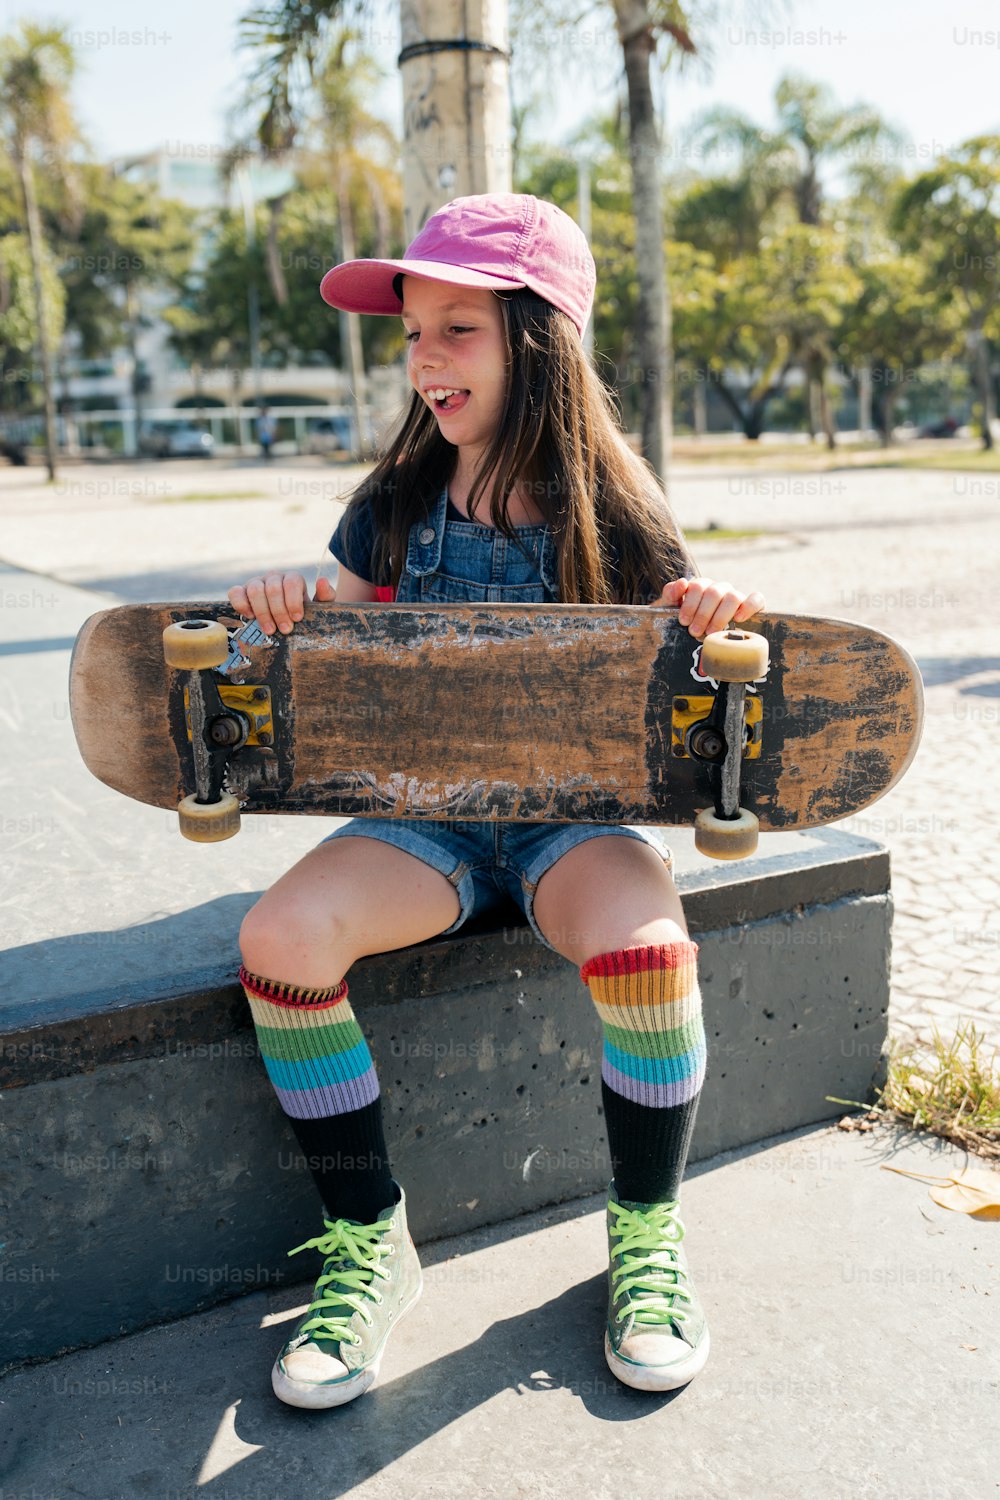 스케이트보드를 들고 벤치에 앉아 있는 어린 소녀